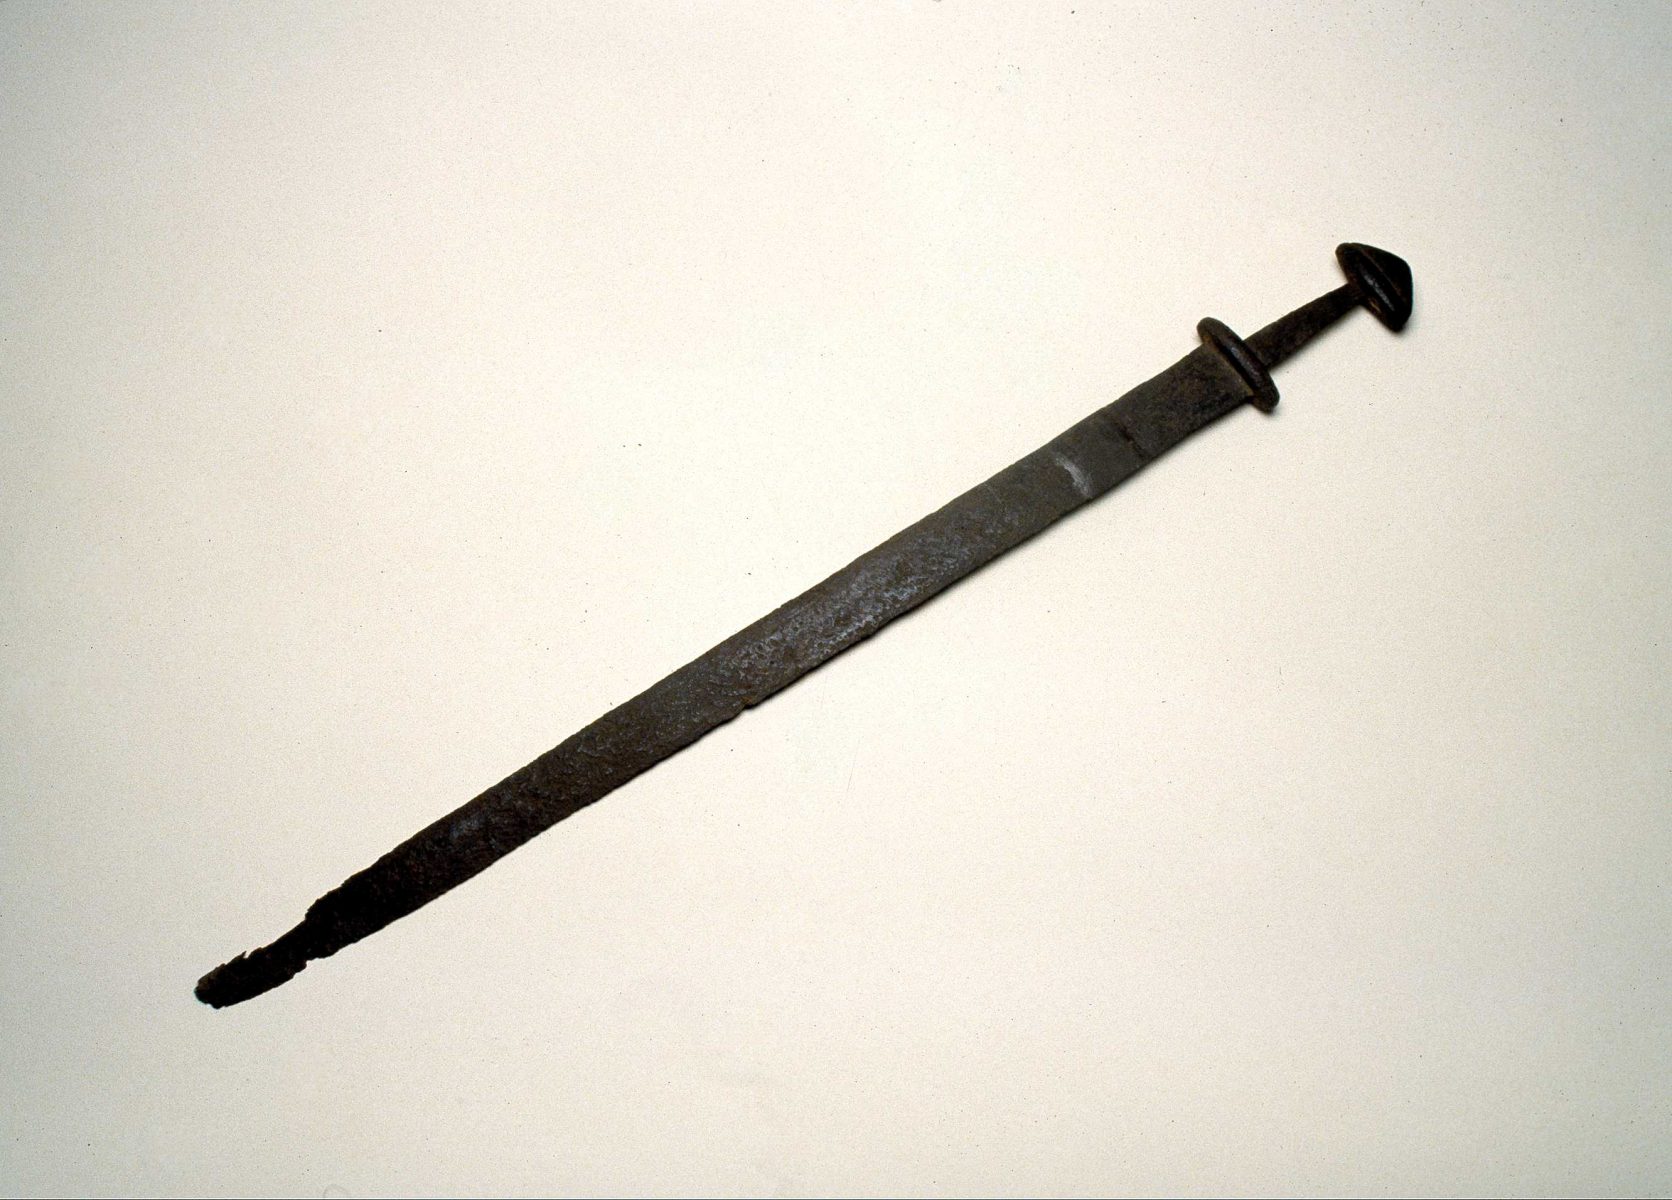 Viking sword found in the Seine